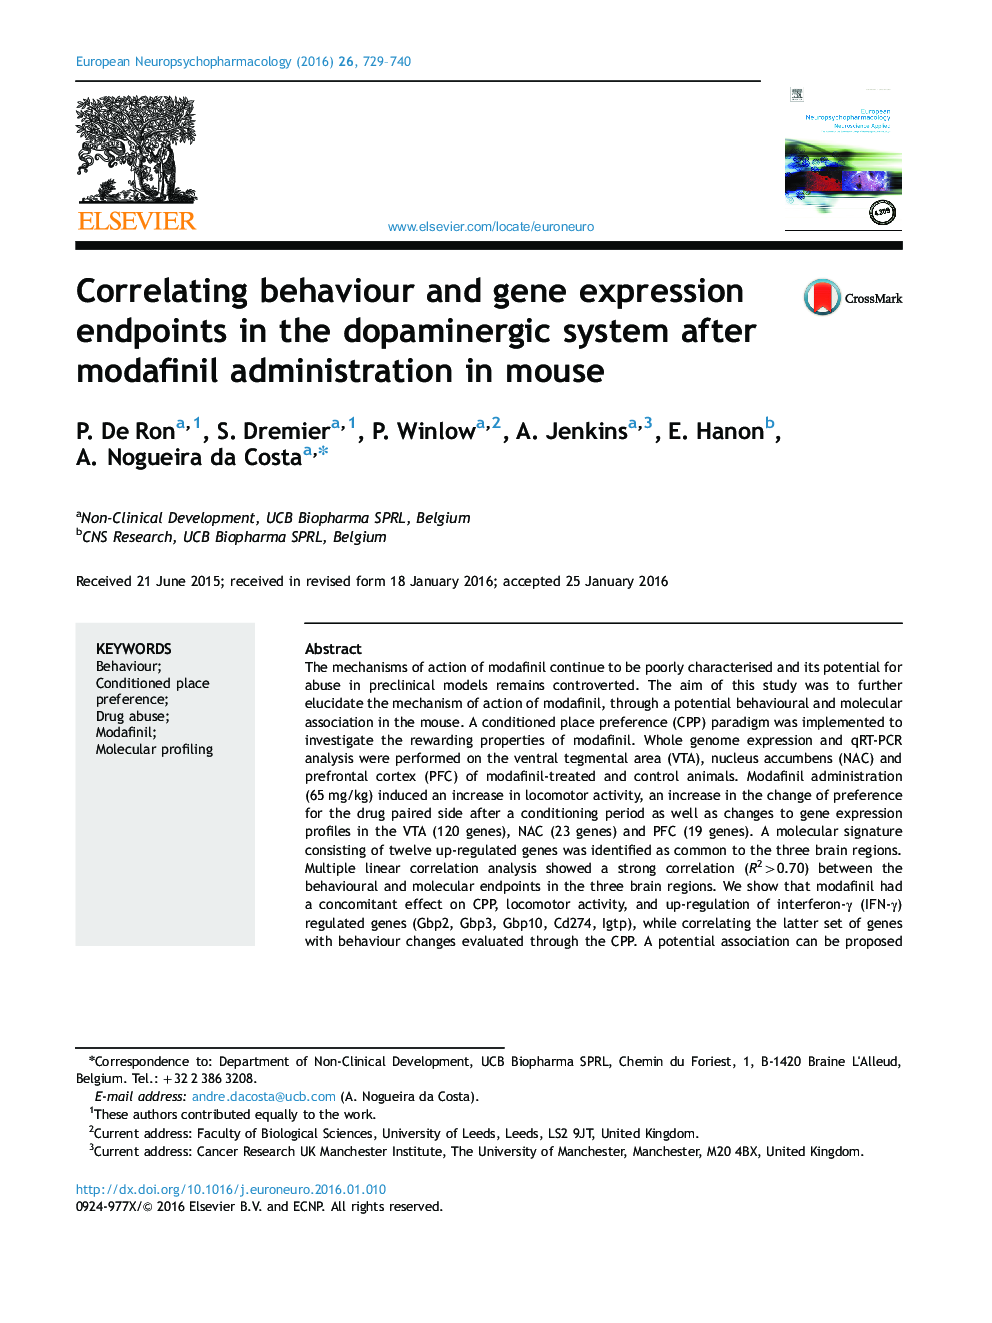 رفتار مرتبط و نقطه انتهایی بروز ژن در سیستم دوپامینرژیک پس از تجویز مودافینیل در موش